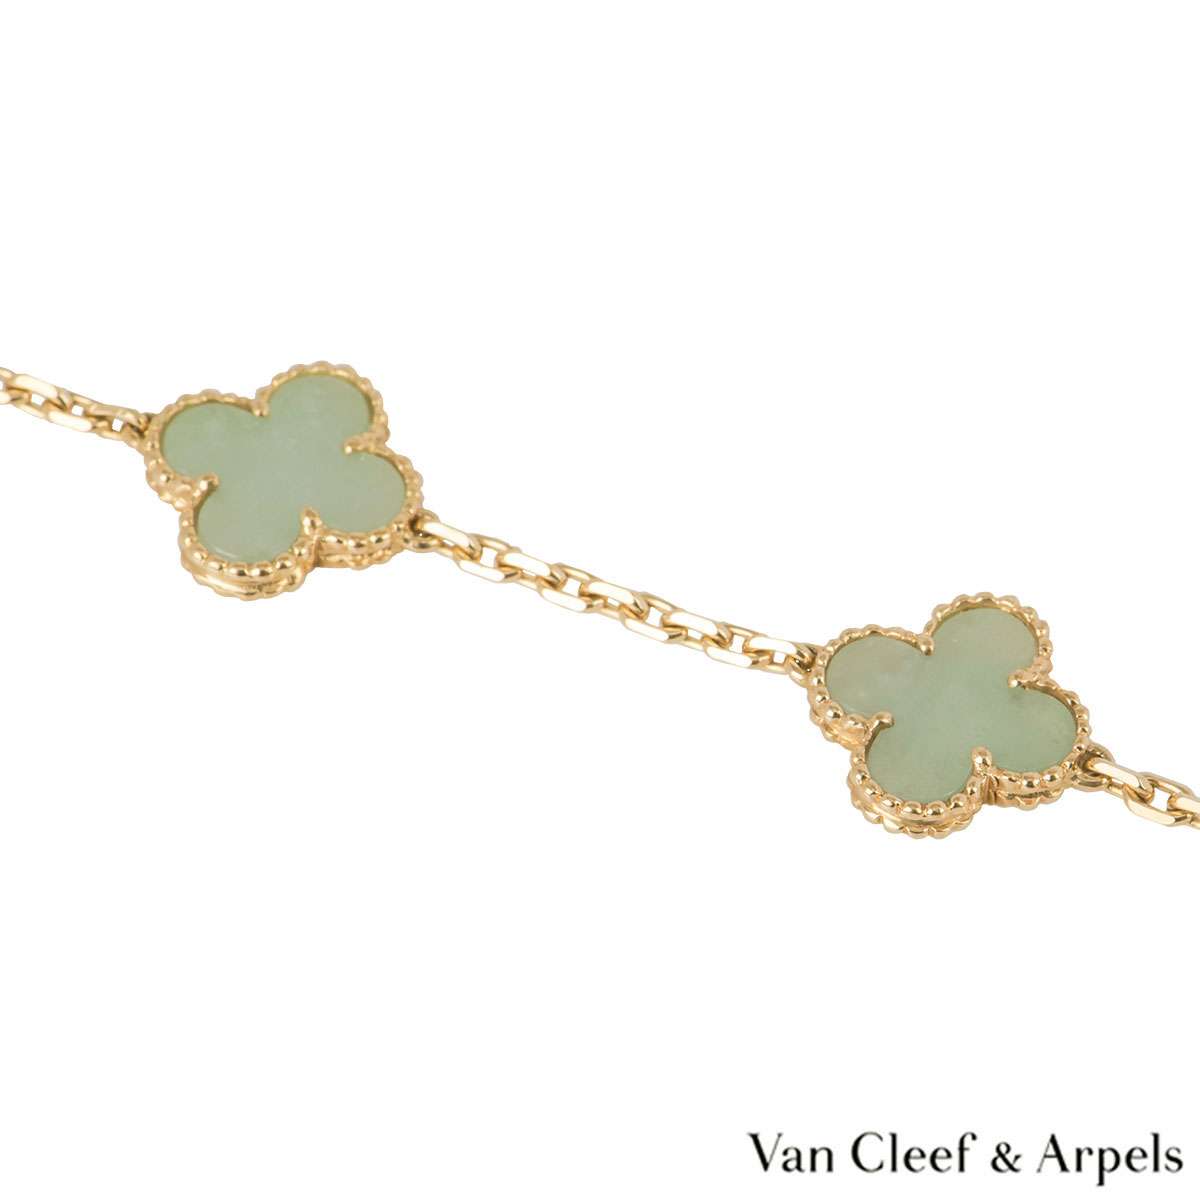 VAN CLEEF & ARPELS “Alhambra Vintage” bracelet in yellow gold